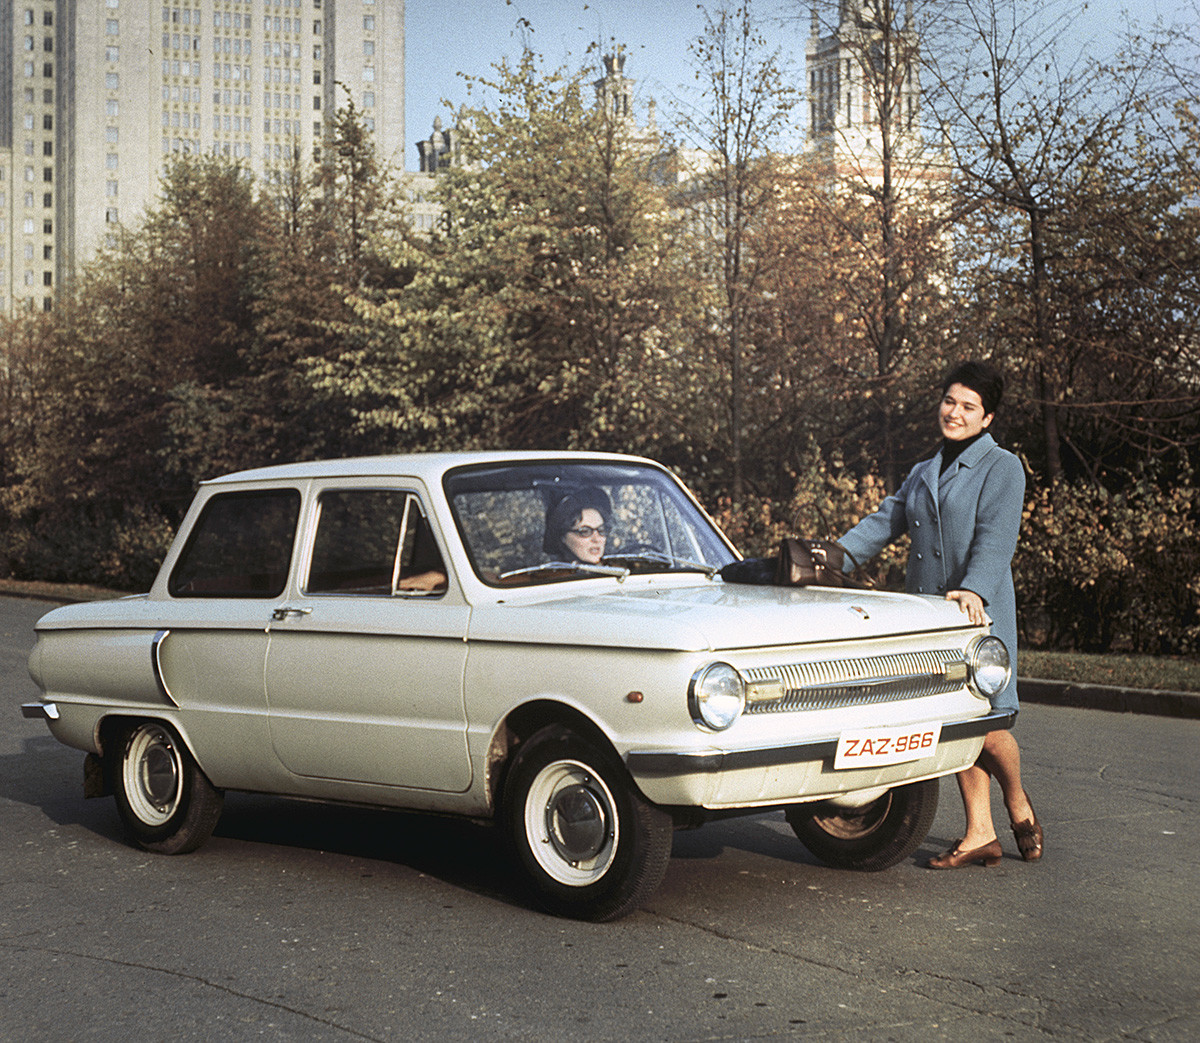 La ZAZ-966, de l’Usine automobile de Zaporojié (abrégée « ZAZ », située en Ukraine). La gamme de ce site de production était surnommée populairement « Zaporojets ». 1970